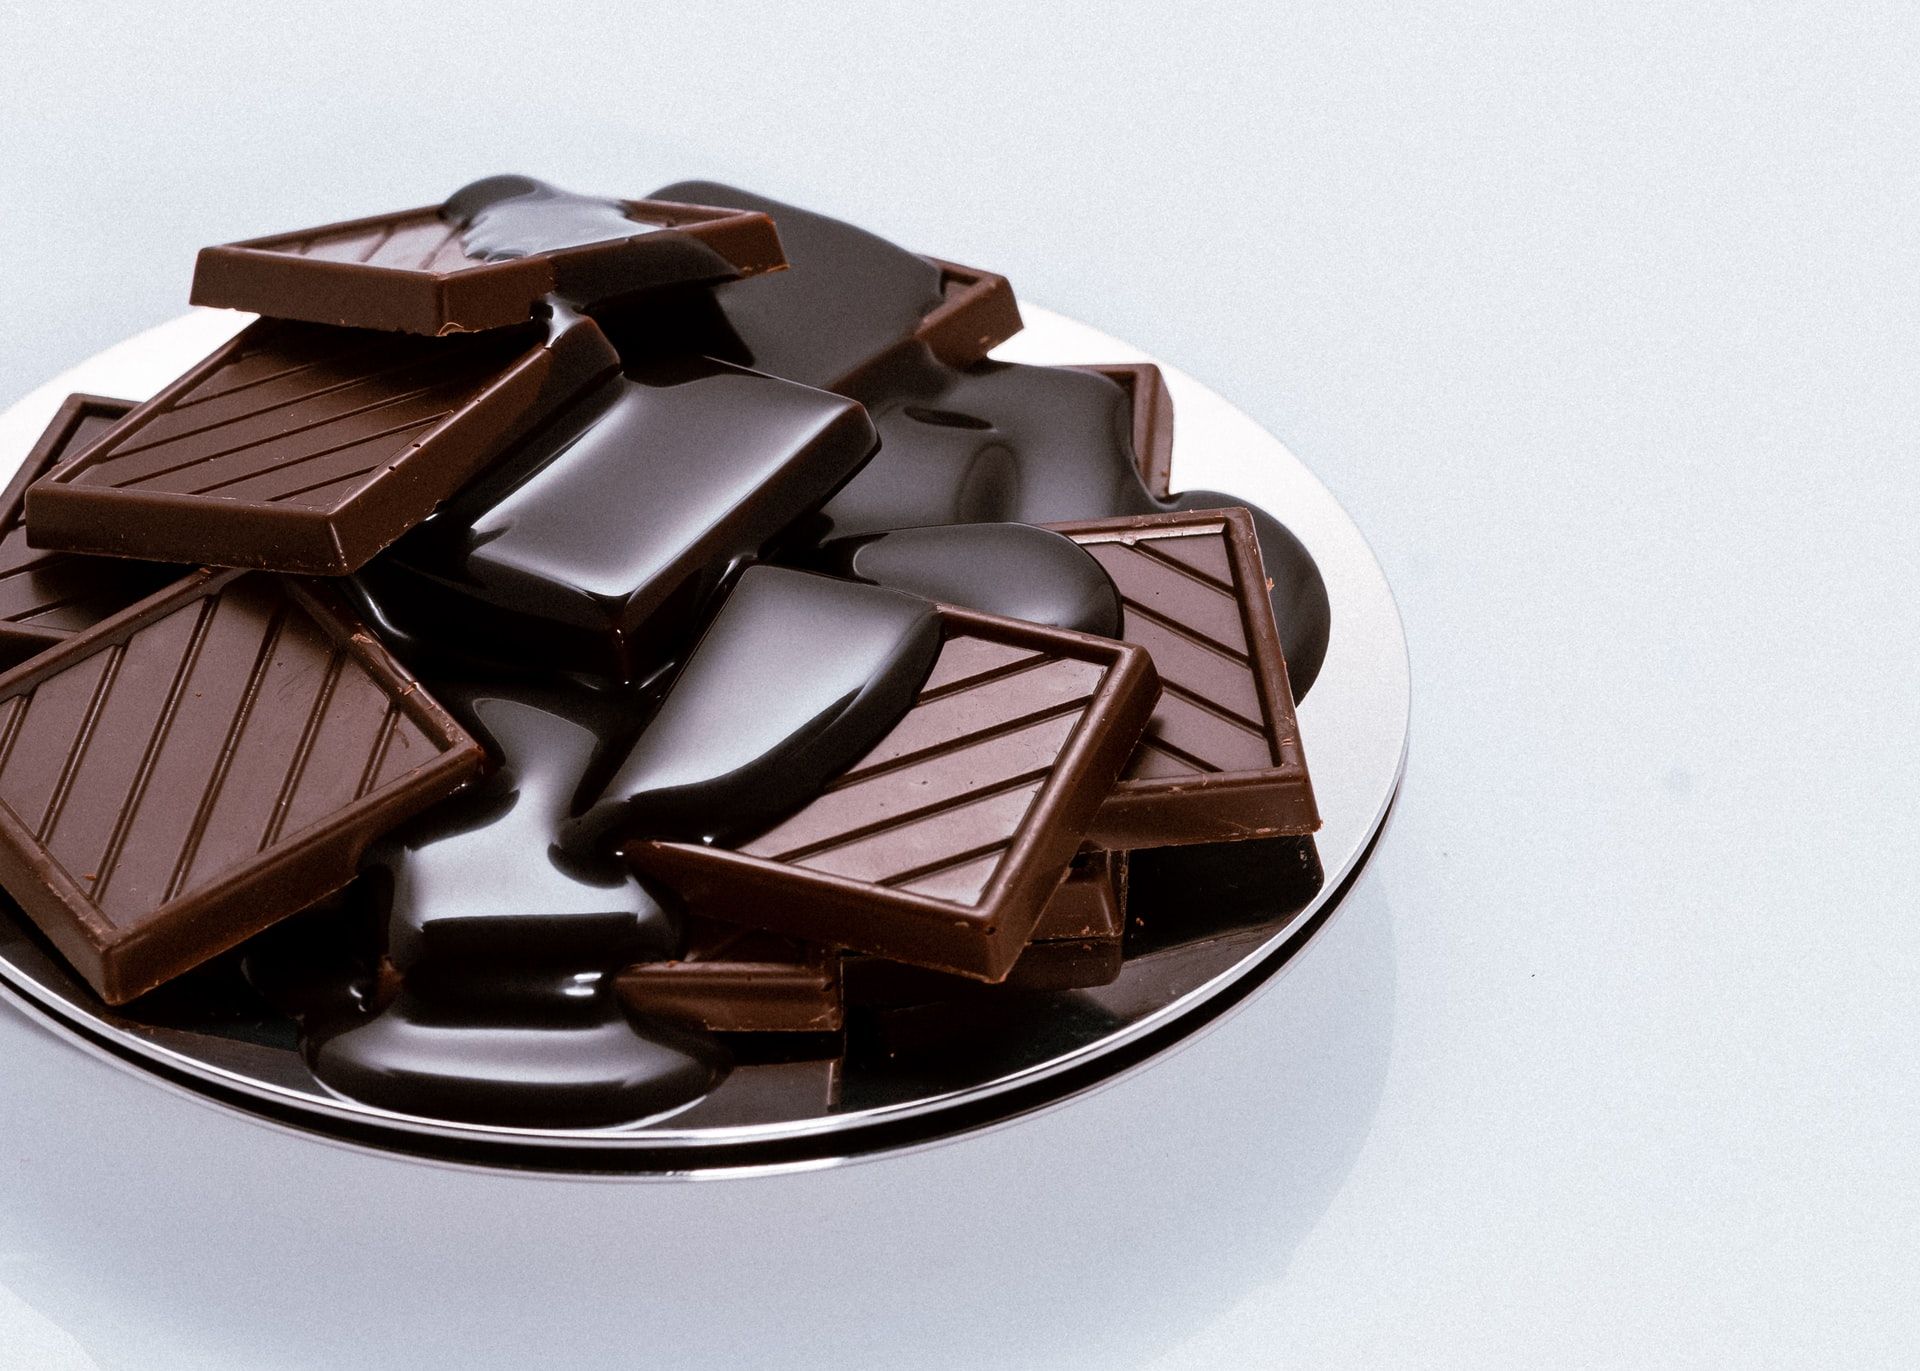 Giornata mondiale del cioccolato 2021, le ricette più golose - immagine 2